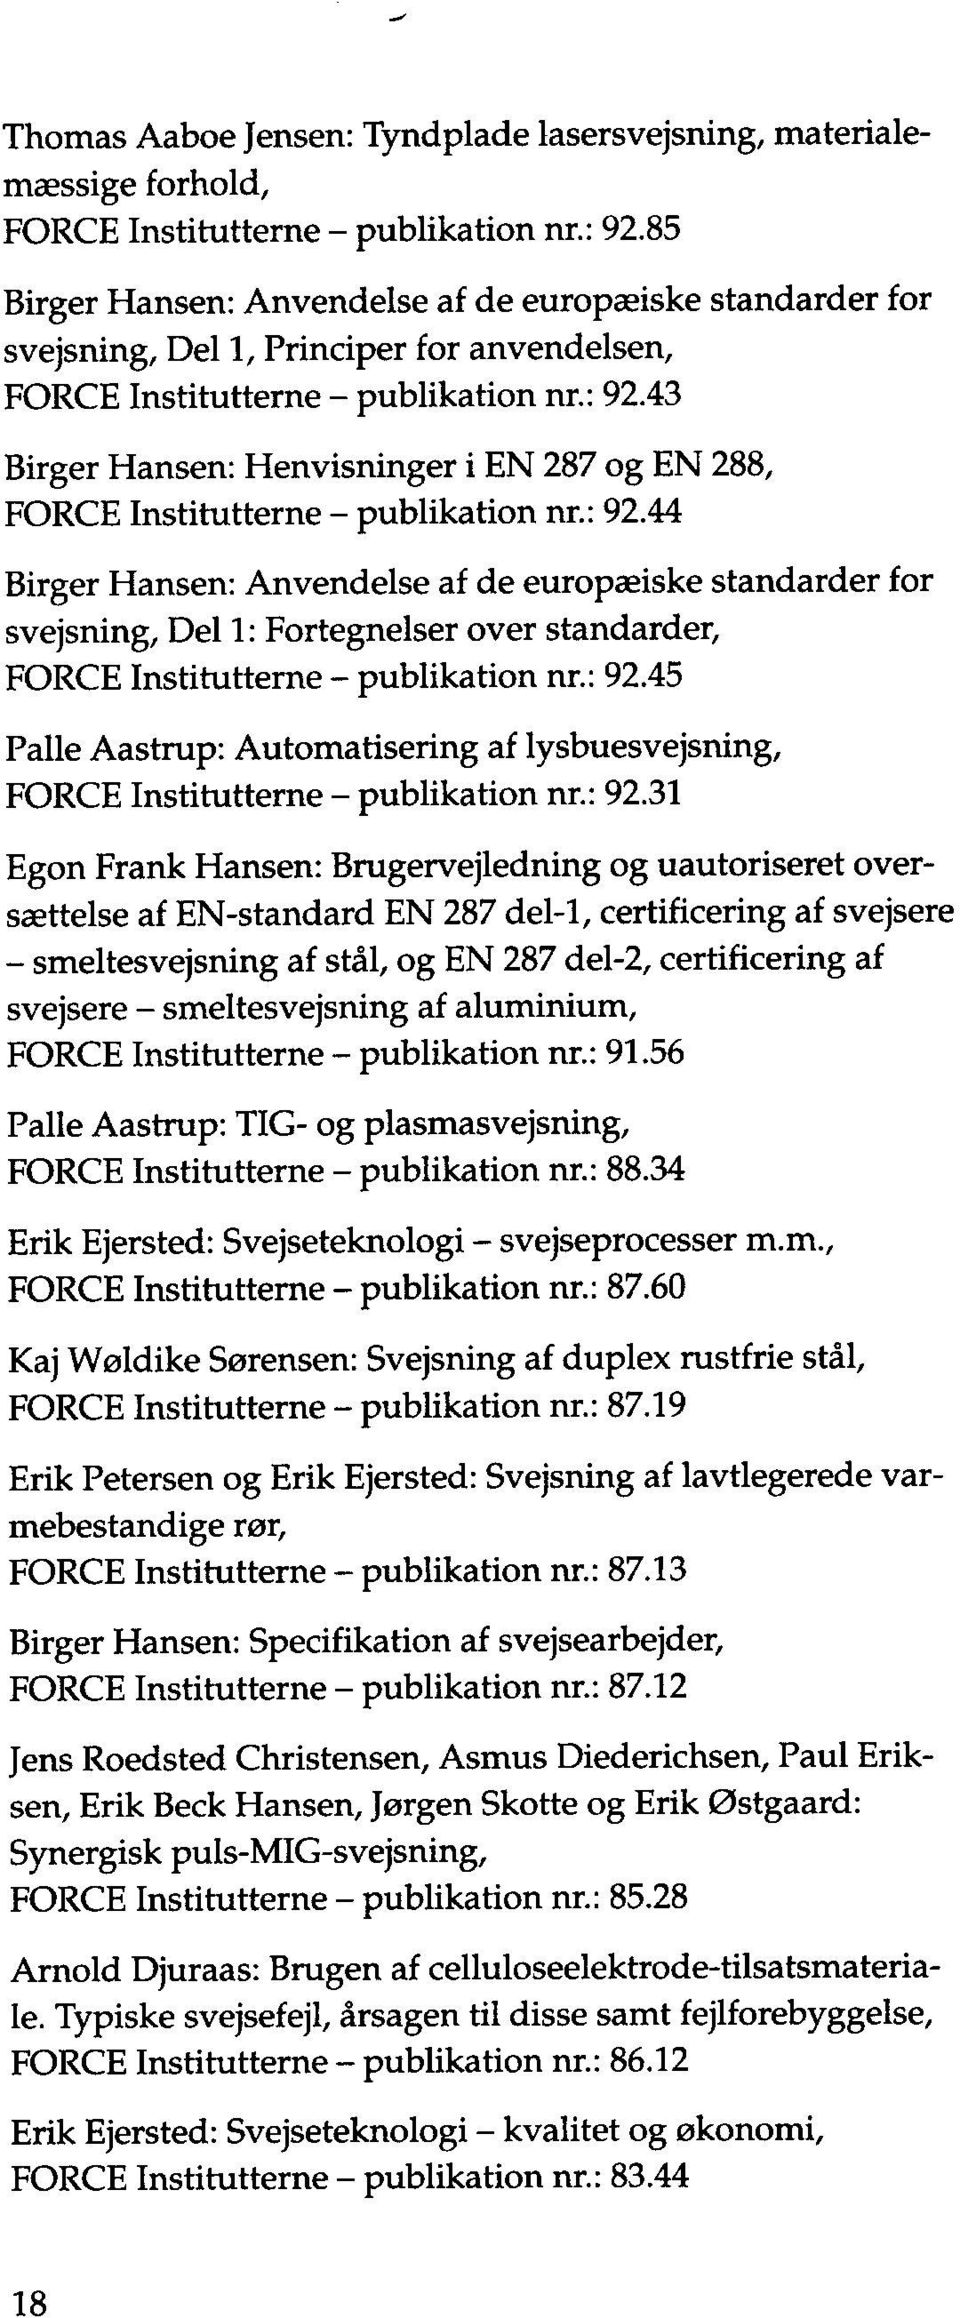 43 Birger Hansen : Henvisninger i EN 287 og EN 288, FORCE Institutterne publikation nr. : 92.